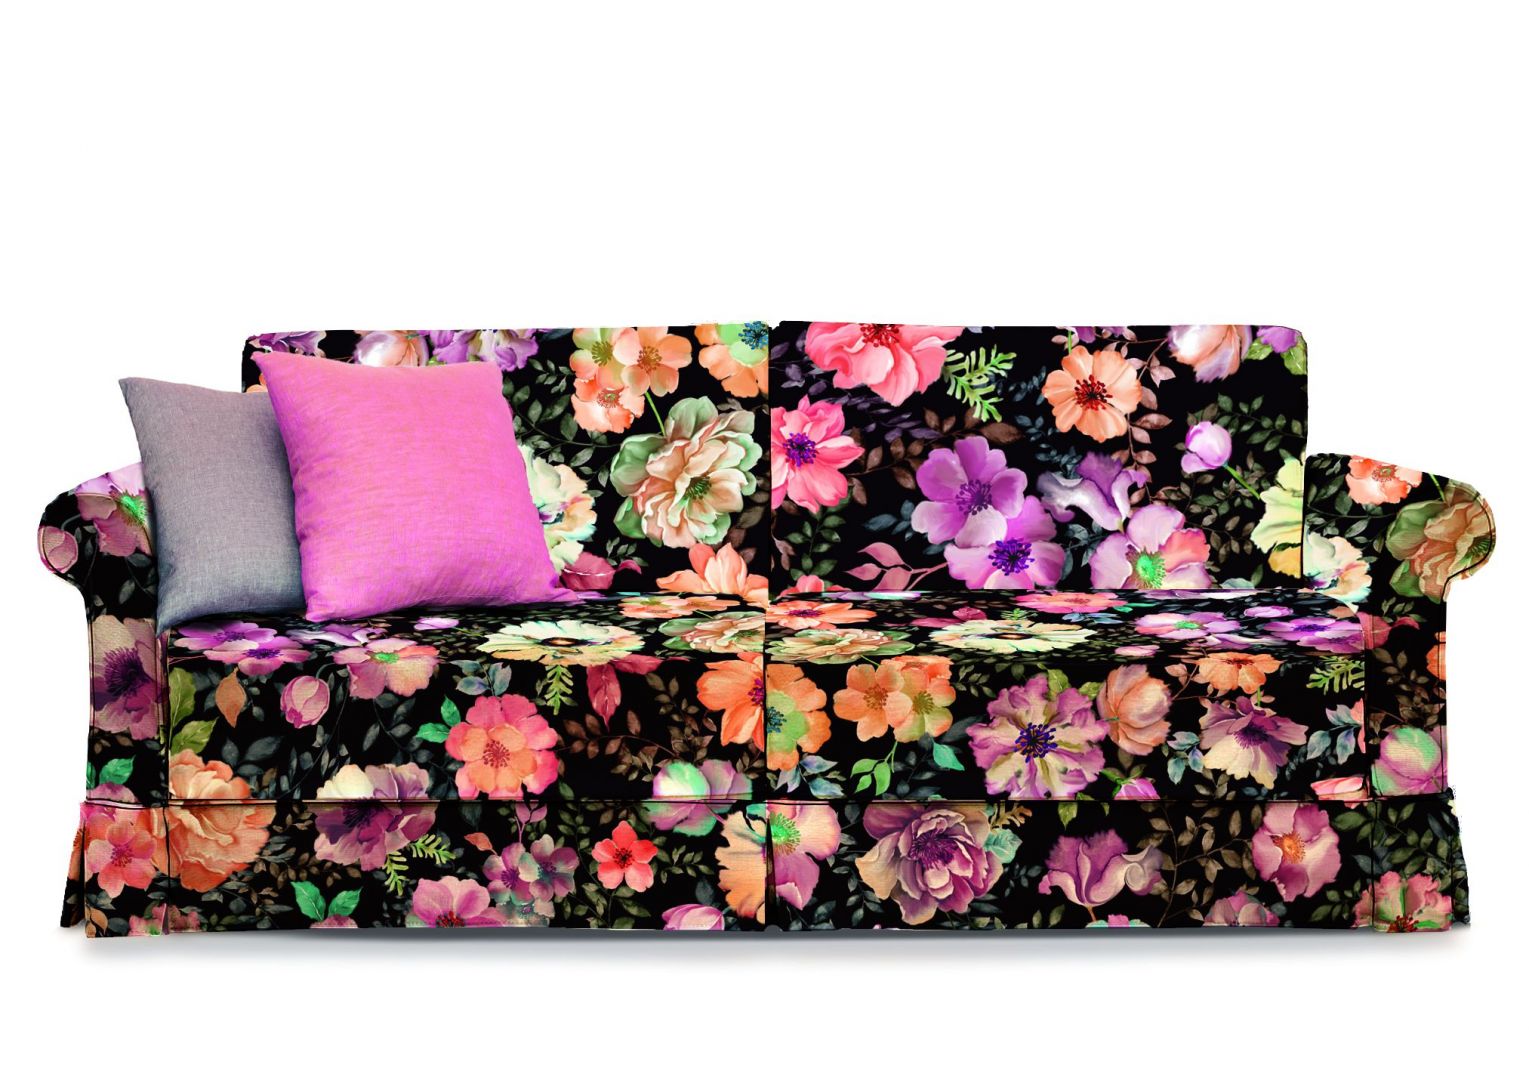 Sofa udekorowana wielobarwnym nadrukiem florystycznym. Wesołe, kolorowe kwiaty oraz dekoracyjne poduchy sprawiają, że to prawdziwa ozdoba wnętrza. Fot. Davis